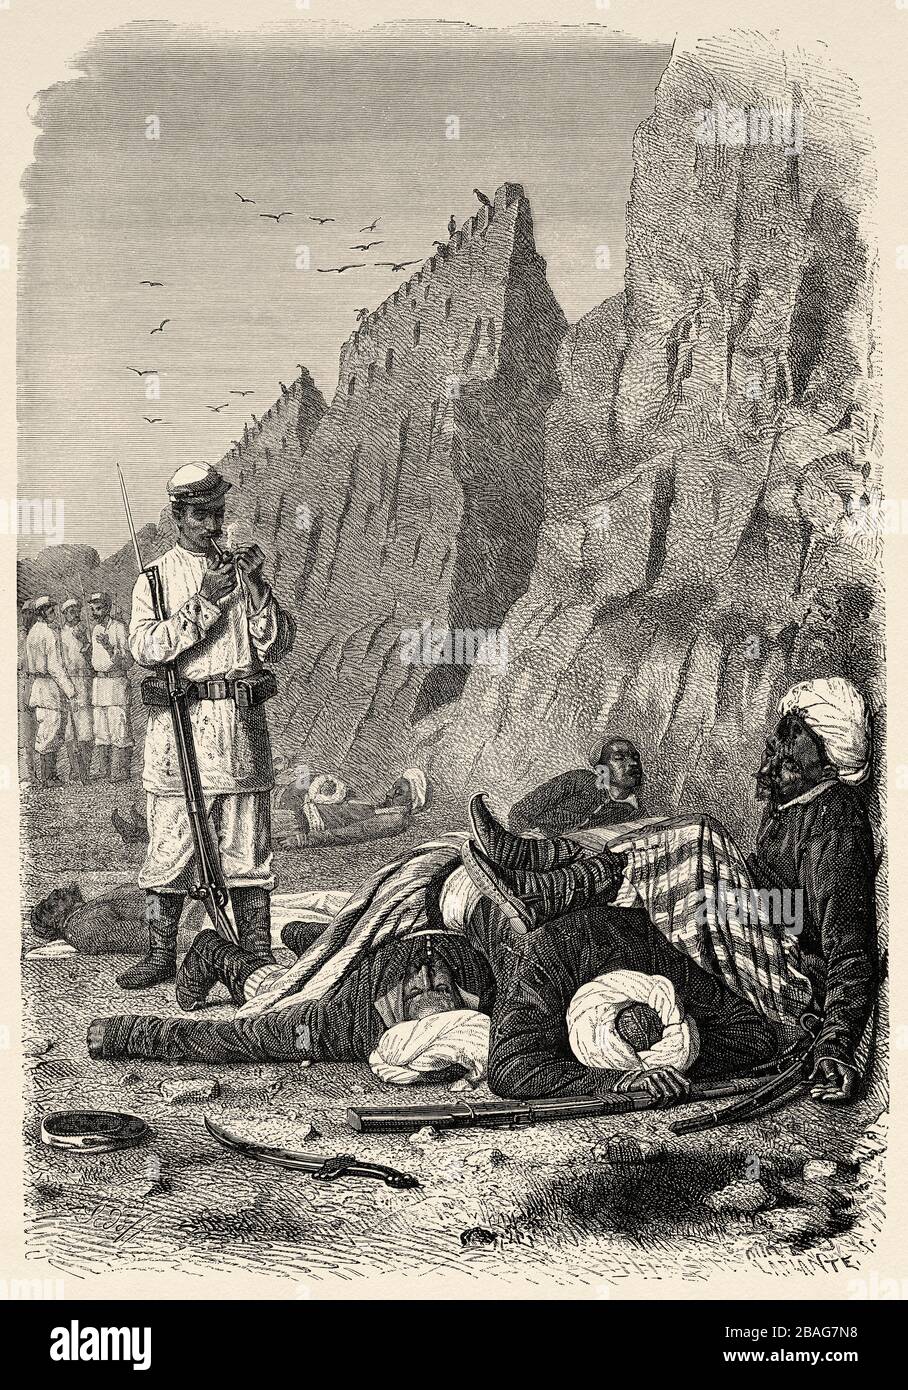 Soldaten tot unter den Mauern von Samarkand, von Reisen in Zentralasien im Jahre 1863 von Armin Vambery. Alte Gravur El Mundo en la Mano 1878 Stockfoto